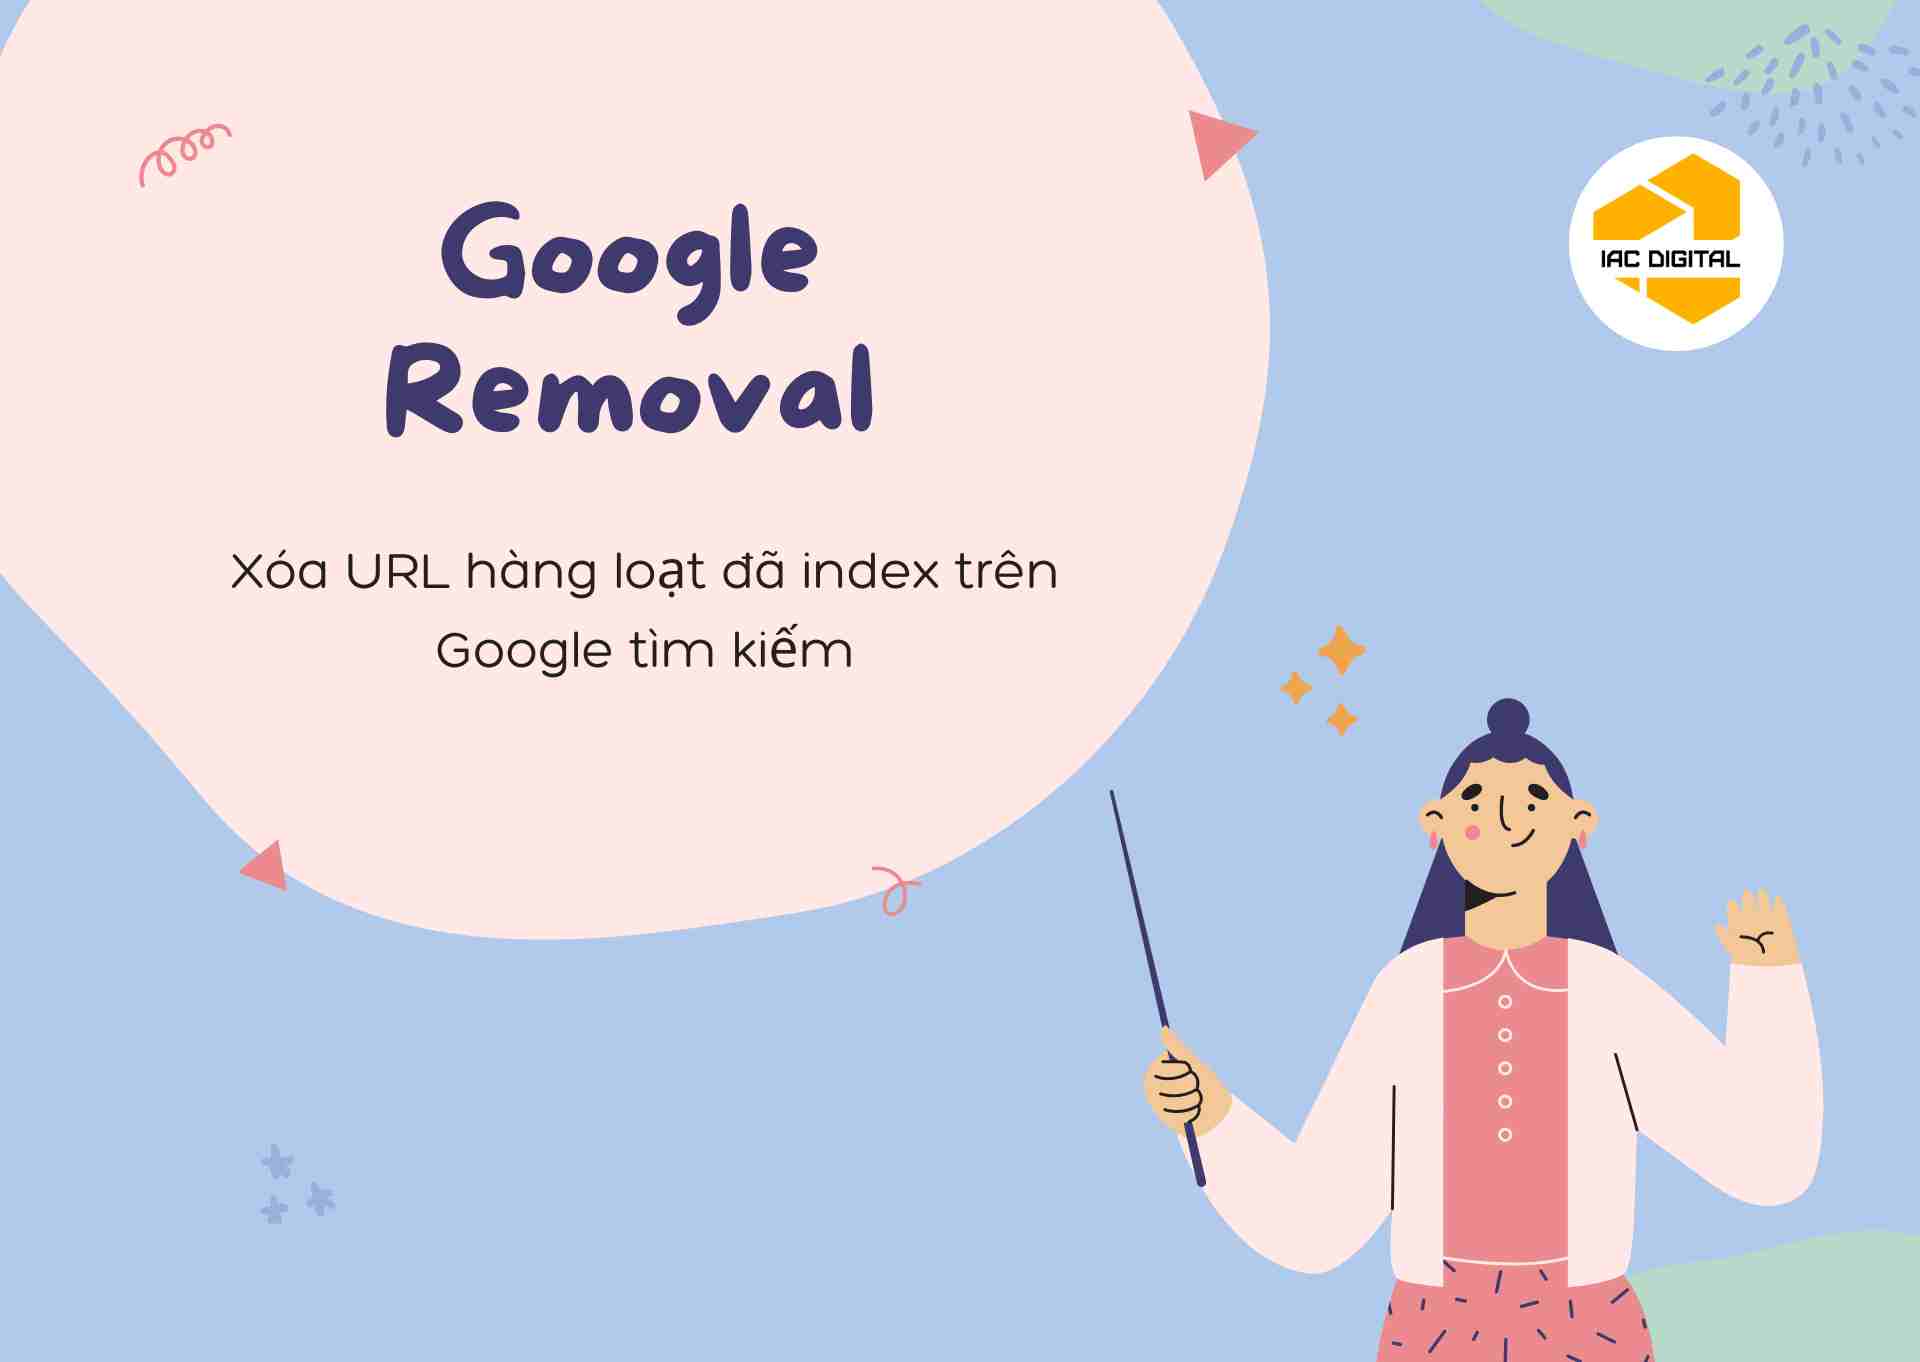 Google removal - cách xóa url hàng loạt đã index trên google